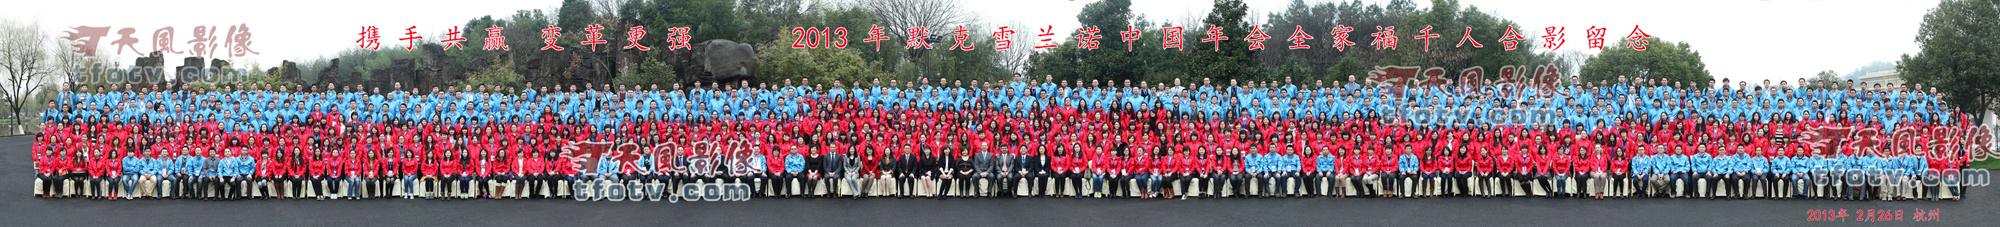 默克雪兰诺2013年年会千人合影摄影杭州大型集体照摄影合影拍摄